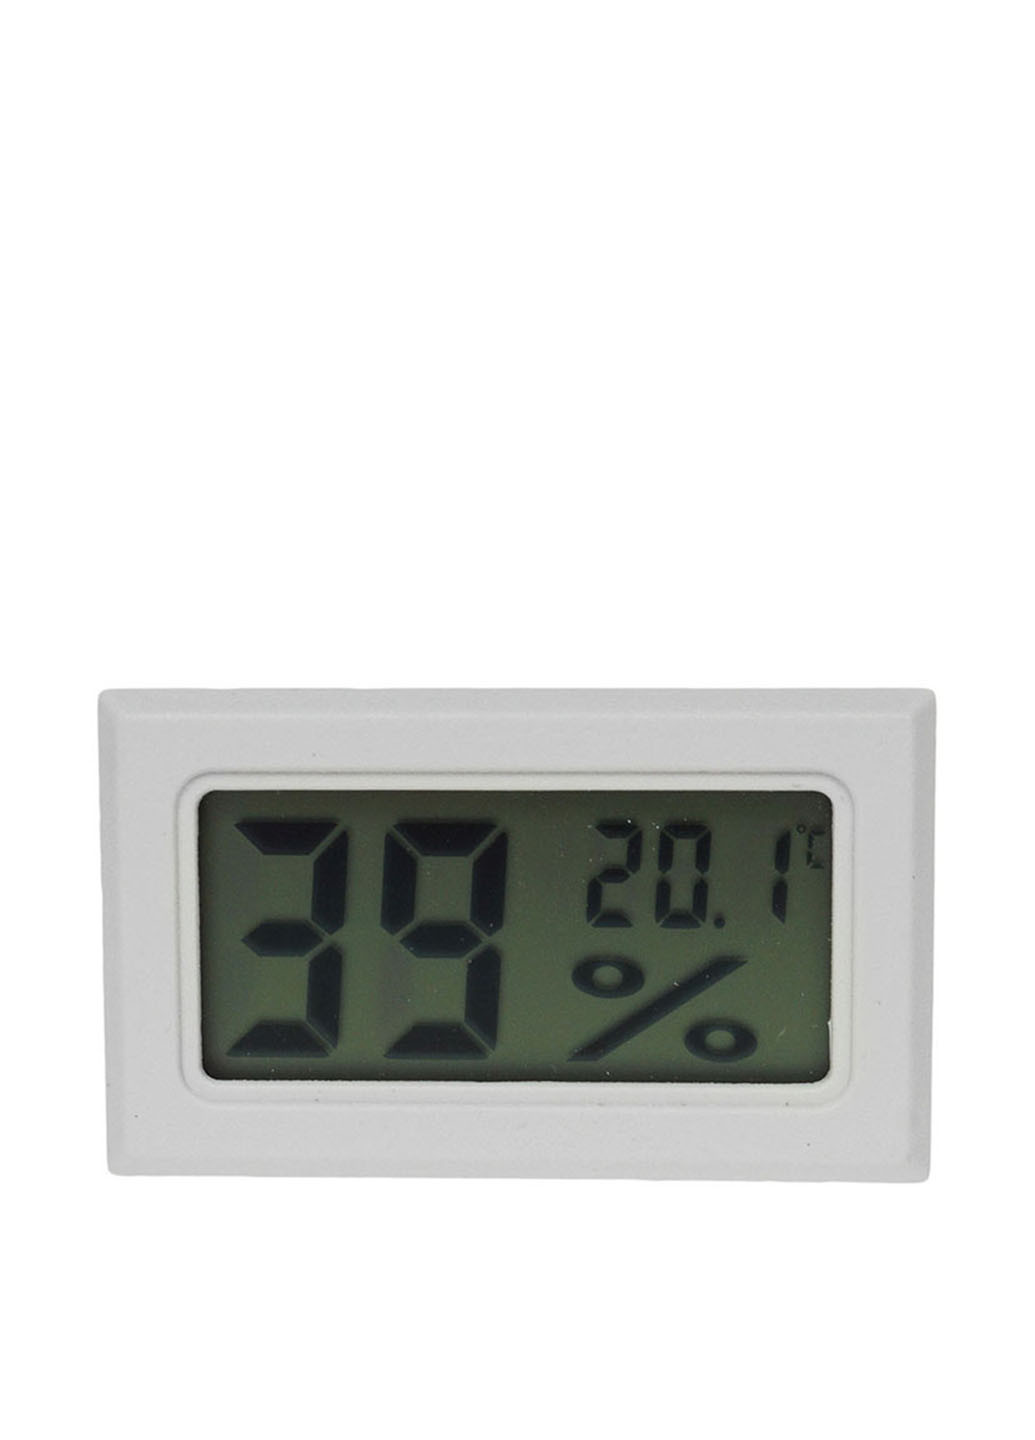 Термогигрометр, 4,8х3х1,6 см TV-magazin однотонный белый